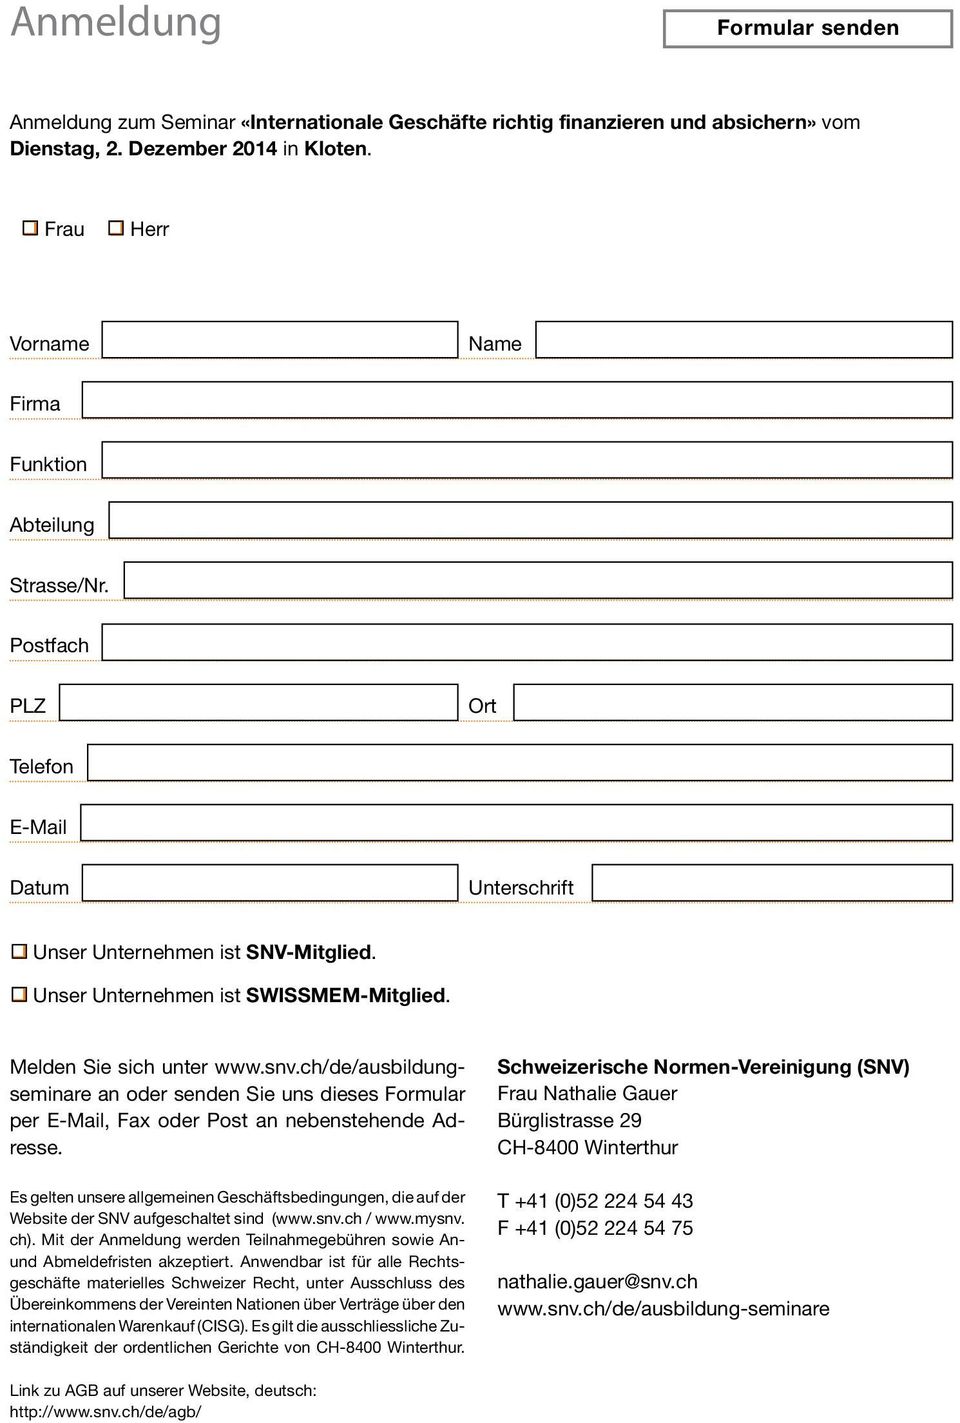 Melden Sie sich unter www.snv.ch/de/ausbildungseminare an oder senden Sie uns dieses Formular per E-Mail, Fax oder Post an nebenstehende Adresse.